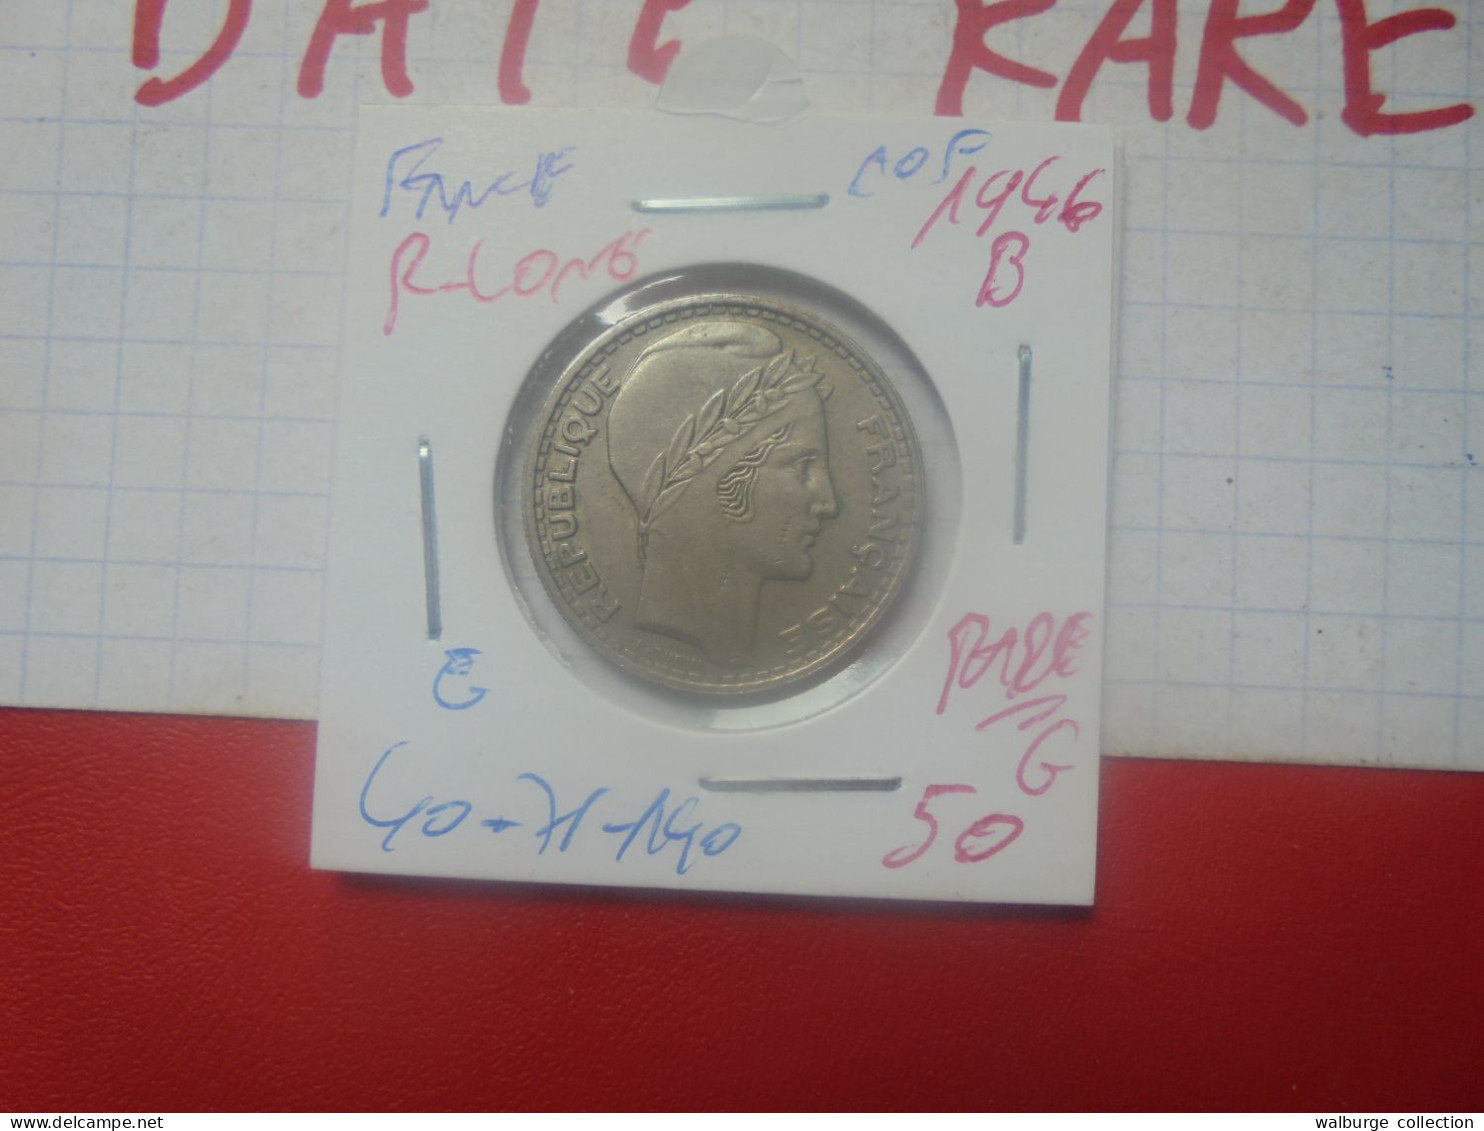 +++RARE+++FRANCE 10 FRANCS 1946 "B" RAMEAUX LONGS+++(A.2) - 10 Francs